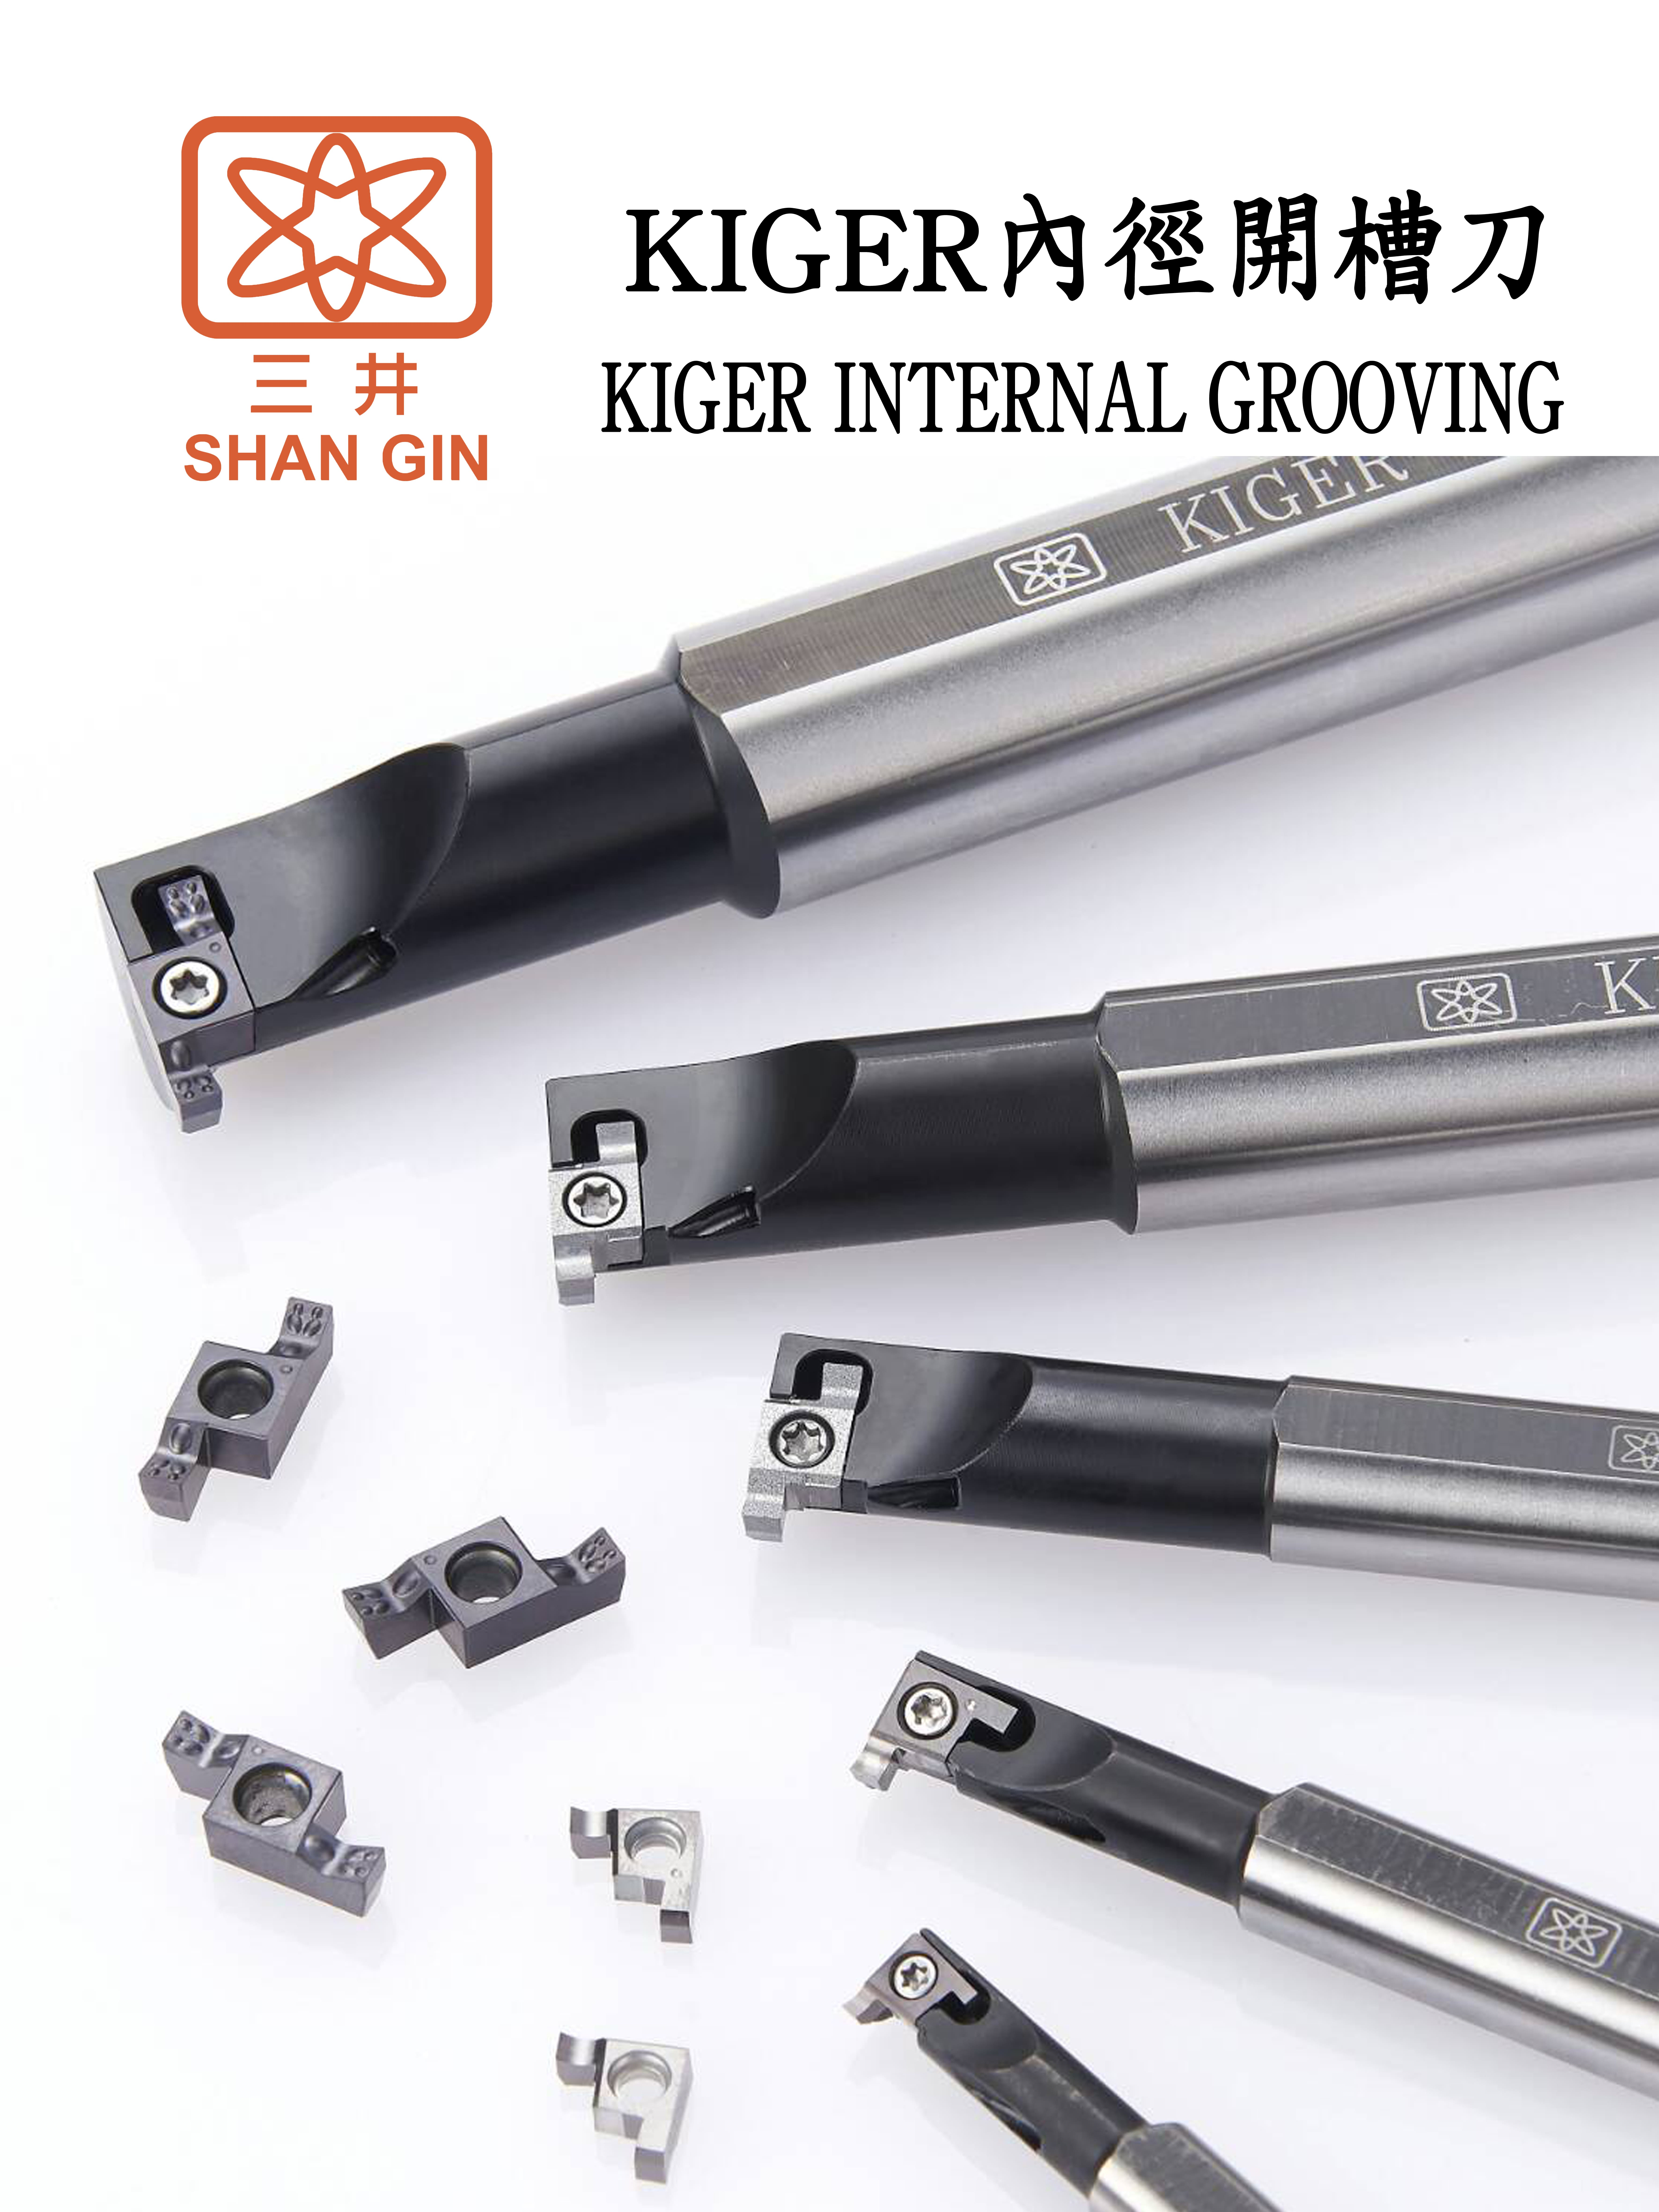 產品|KIGER 內徑開槽刀